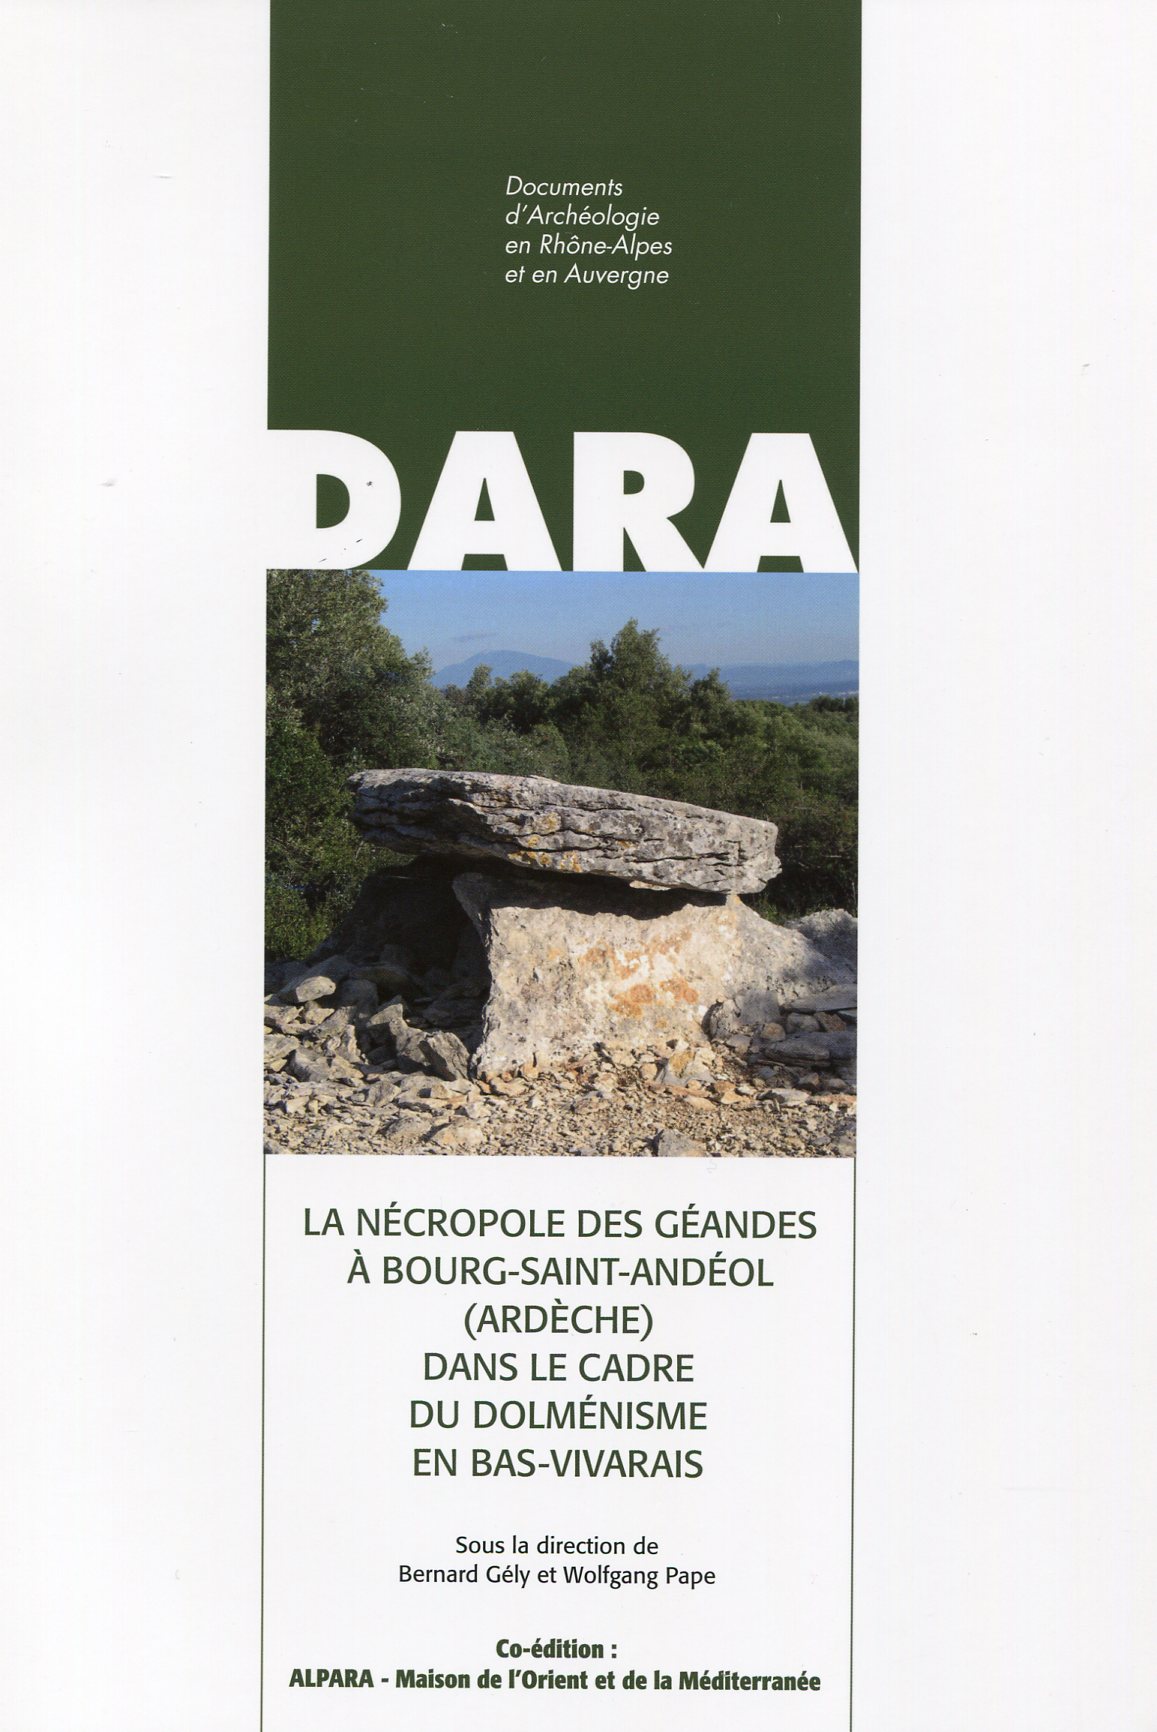 La nécropole des Géandes à Bourg-Saint-Andéol (Ardèche) dans le cadre du dolménisme en Bas-Vivarais, (DARA 41), 2014, 344 p.